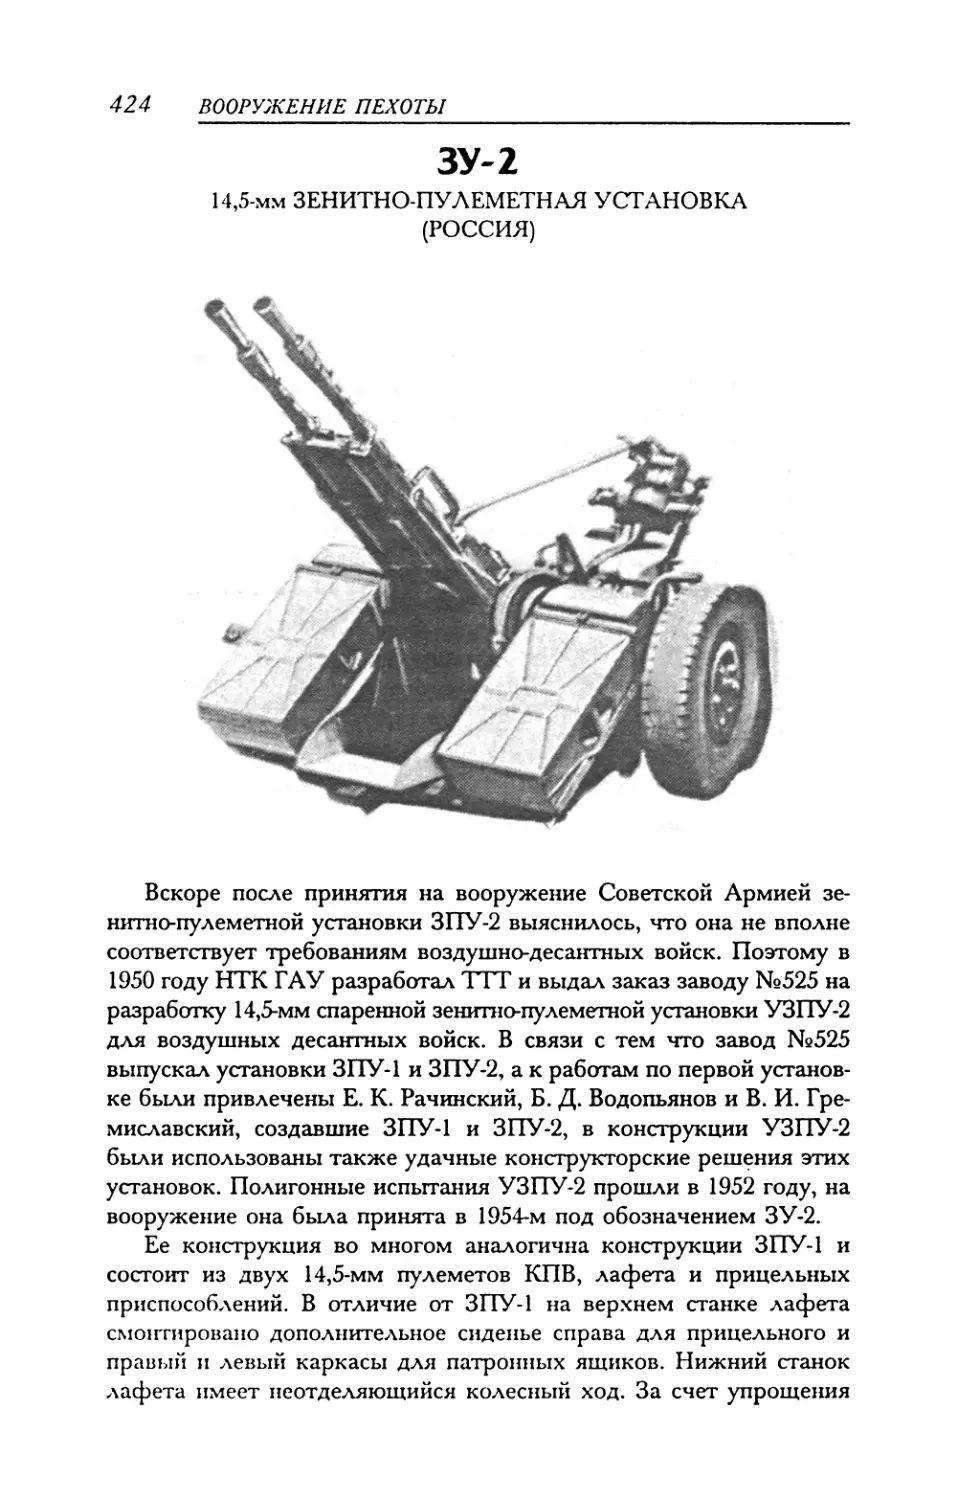 ЗУ-2